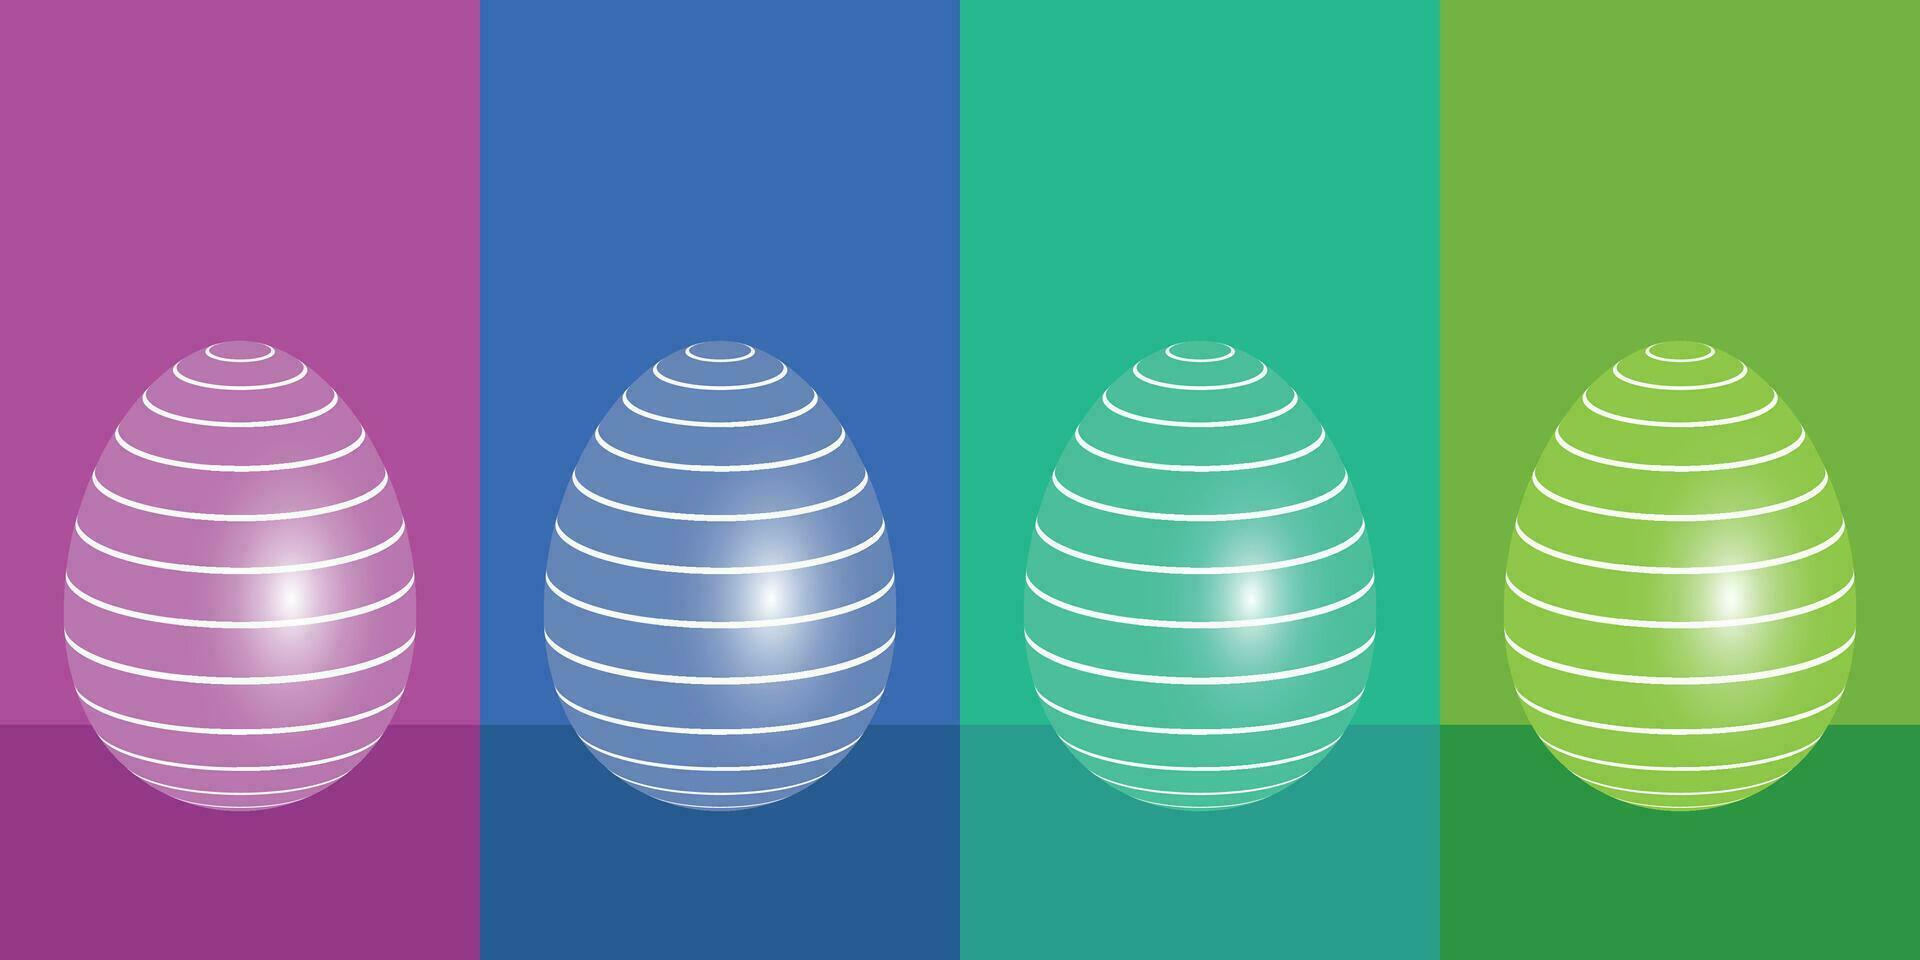 Vektor Illustration mit einstellen von bunt Ostern Eier mit Streifen